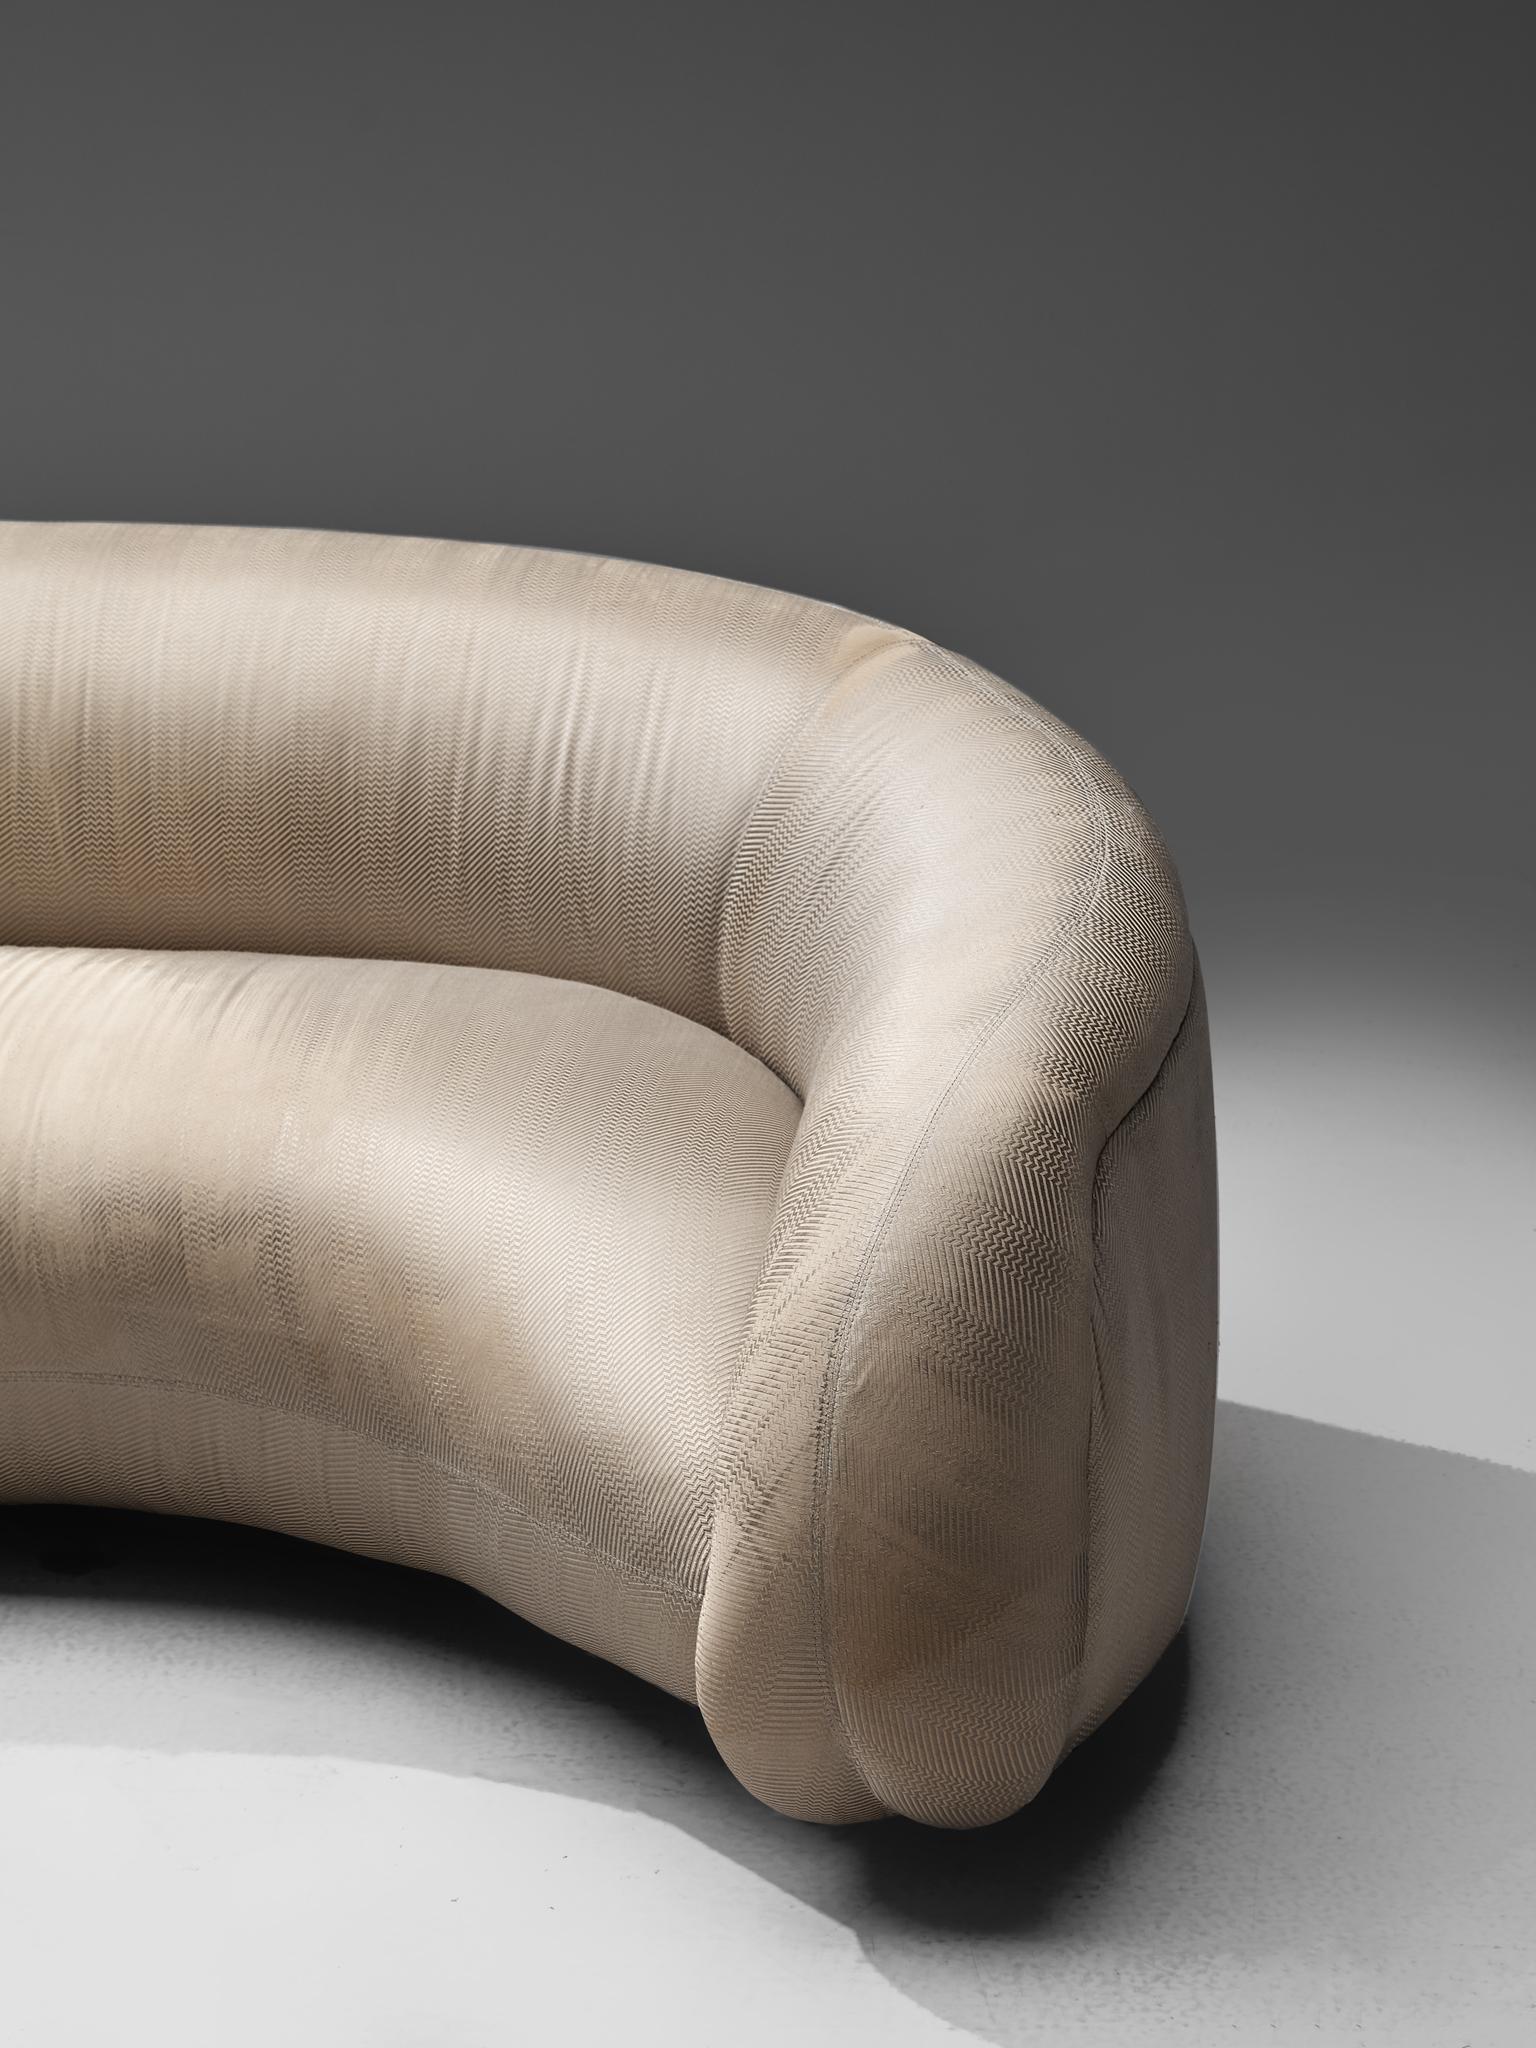 Late 20th Century Vladimir Kagan Biomorphic Sofa in Eggshell White Upholstery